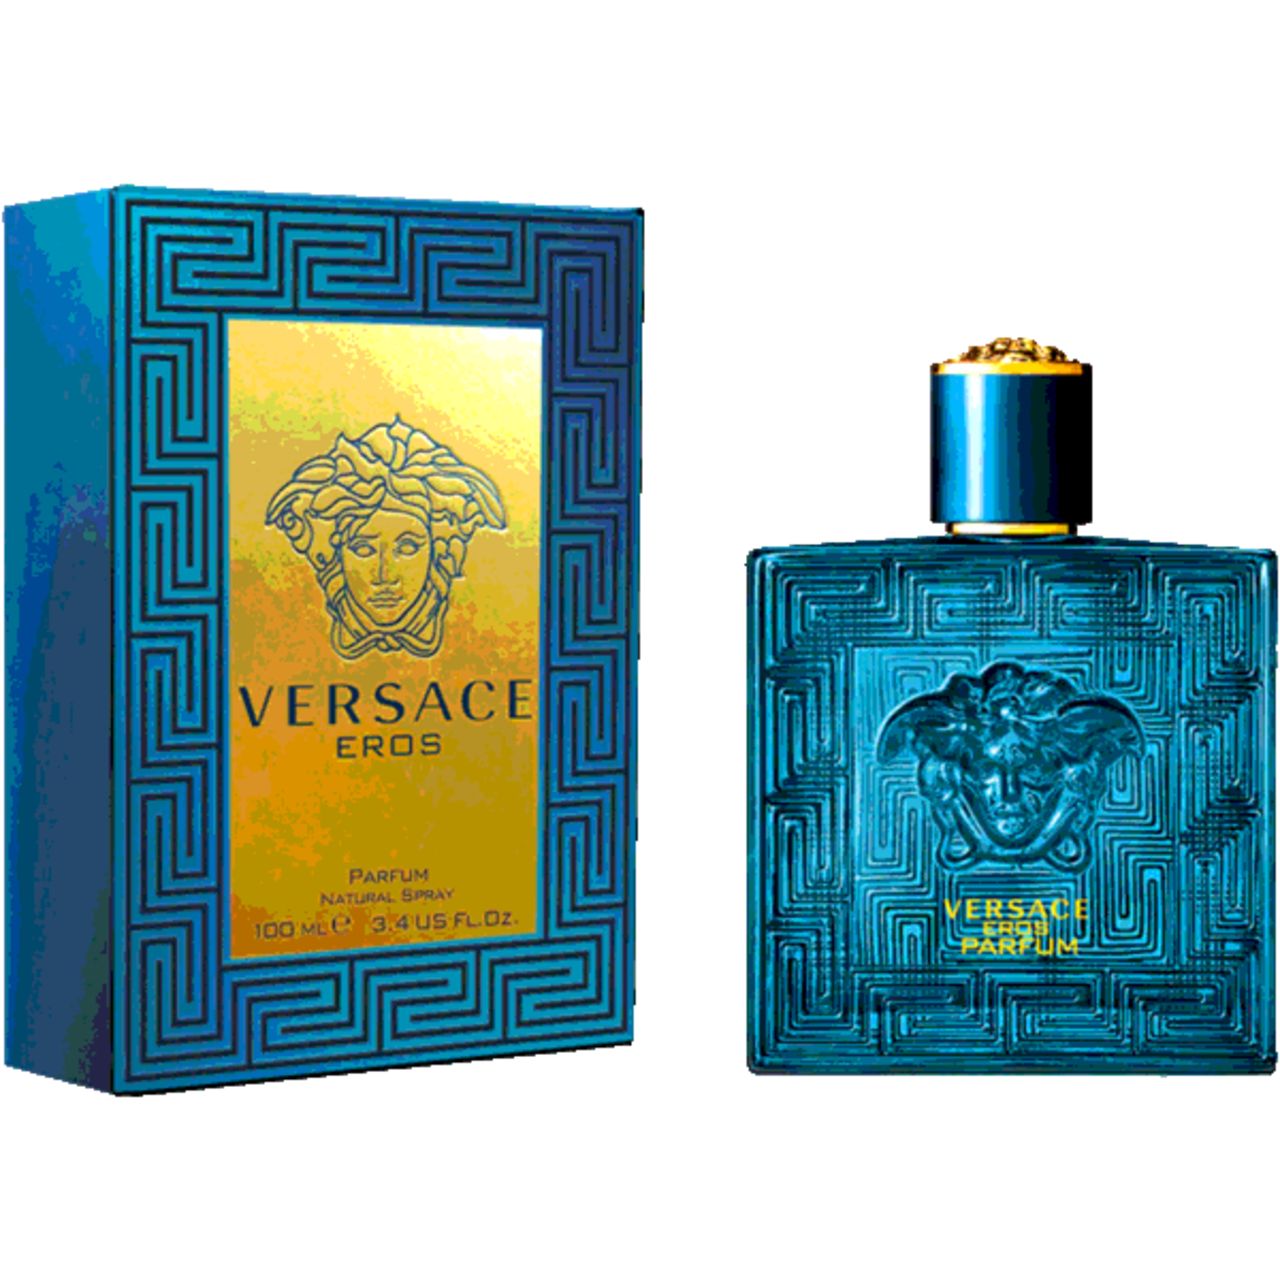 Versace, Eros Perfume Spray